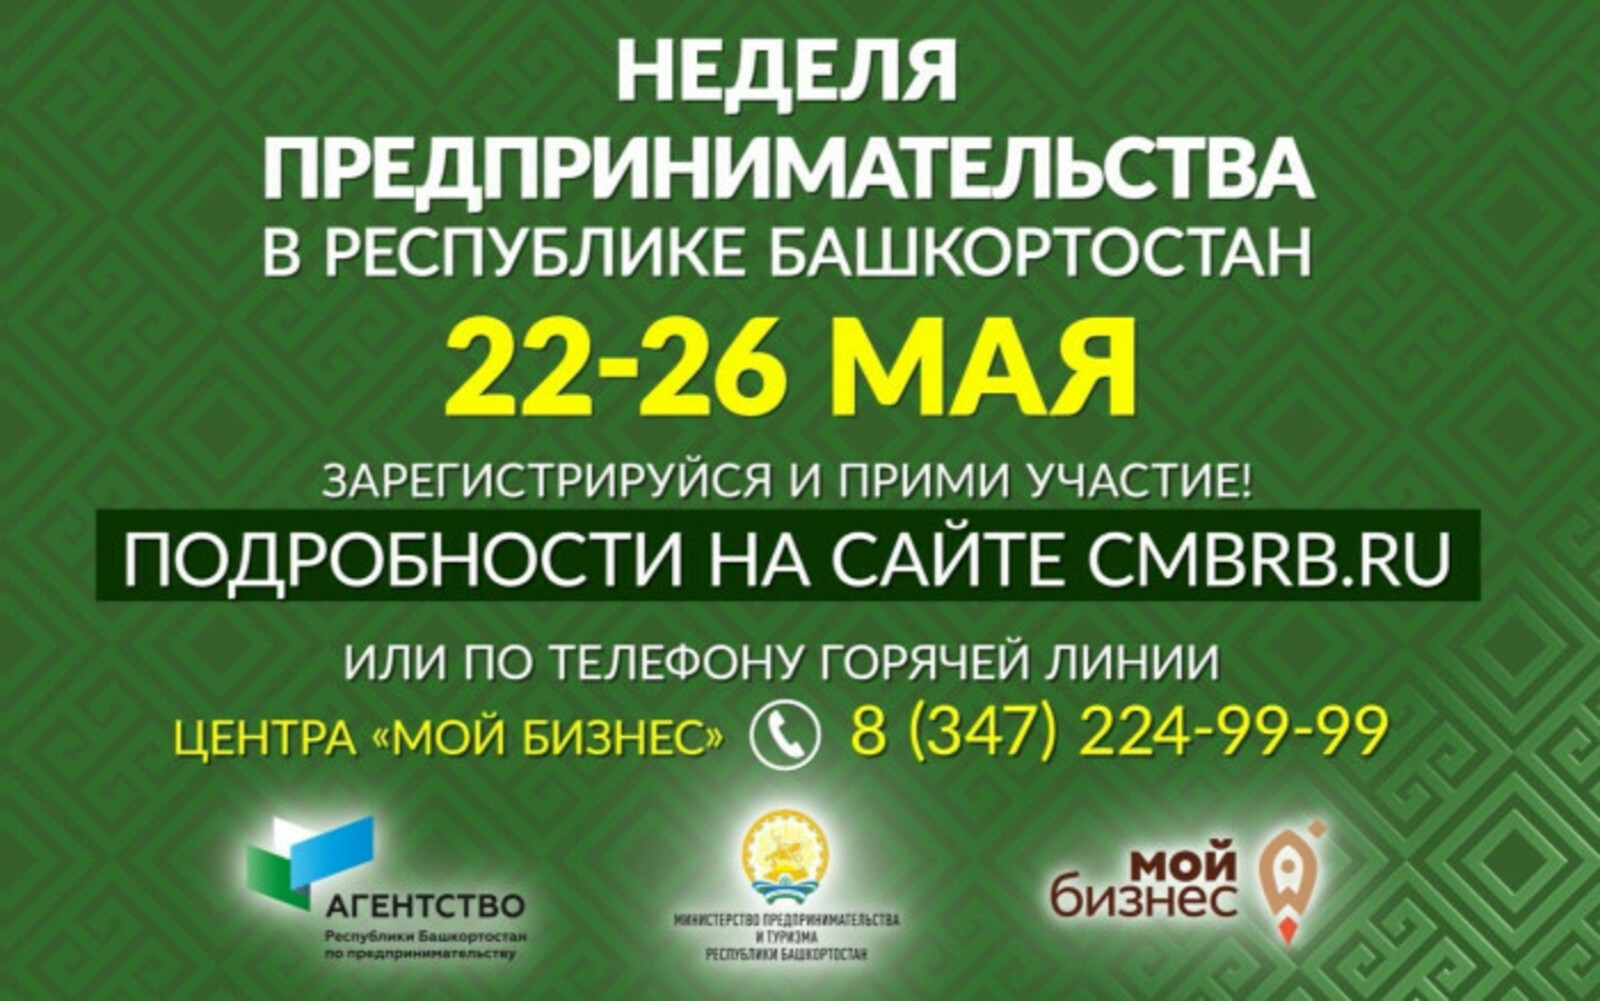 Неделя предпринимательства в Республике Башкортостан пройдет с 22 по 26 мая